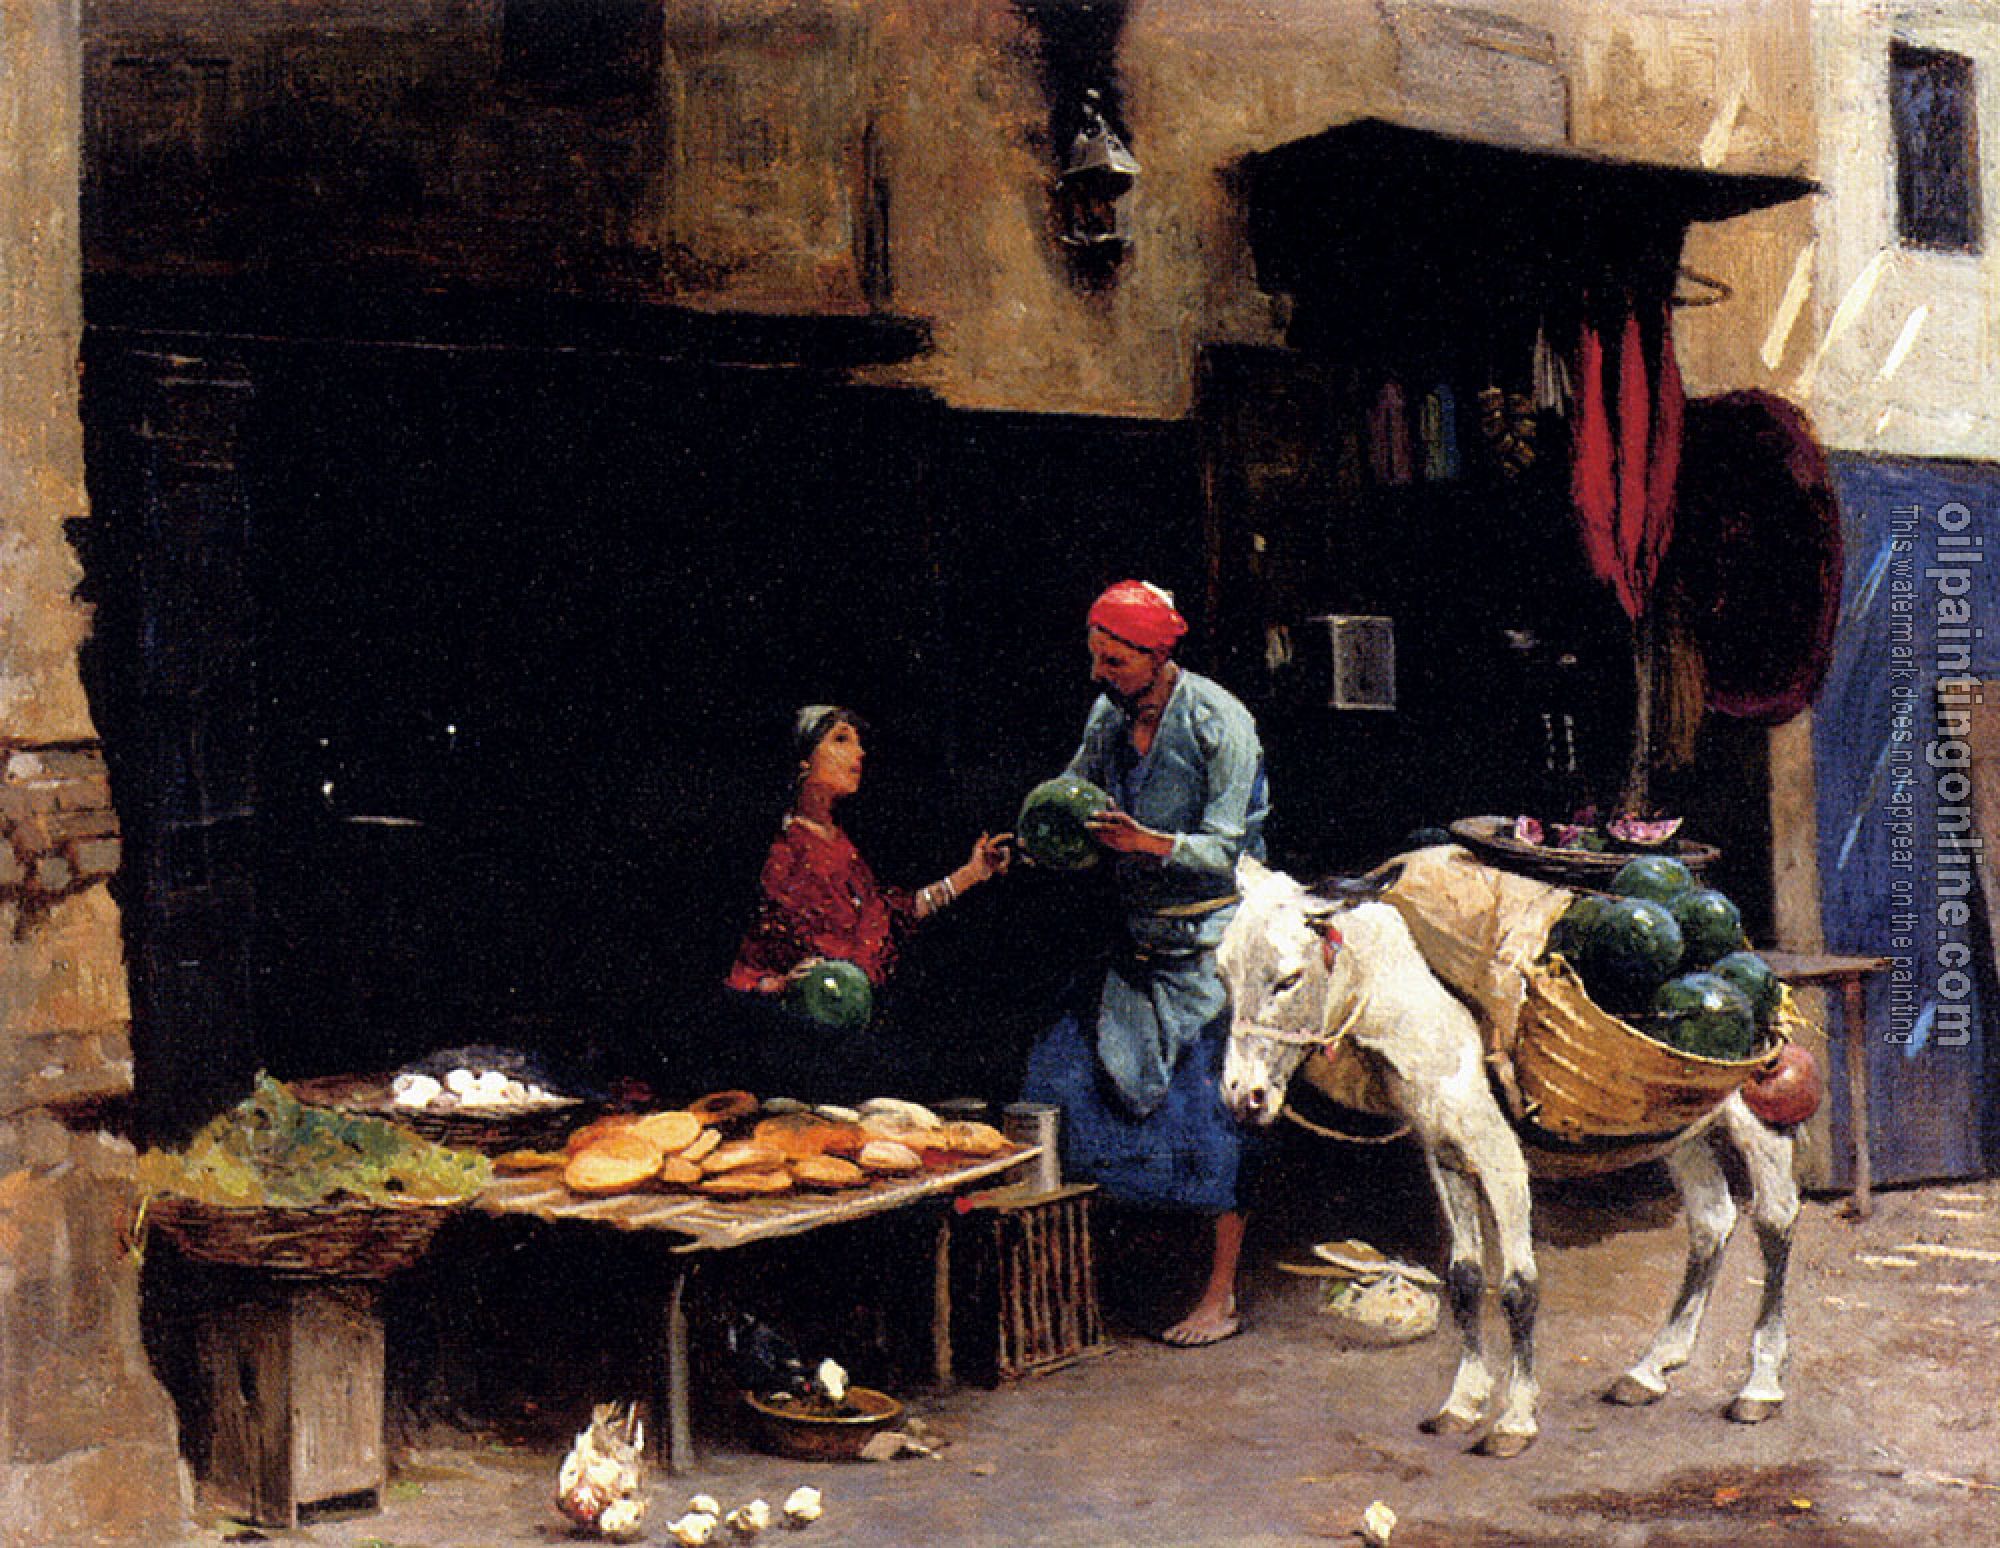 Ambros, Raphael von - The Watermelon Seller